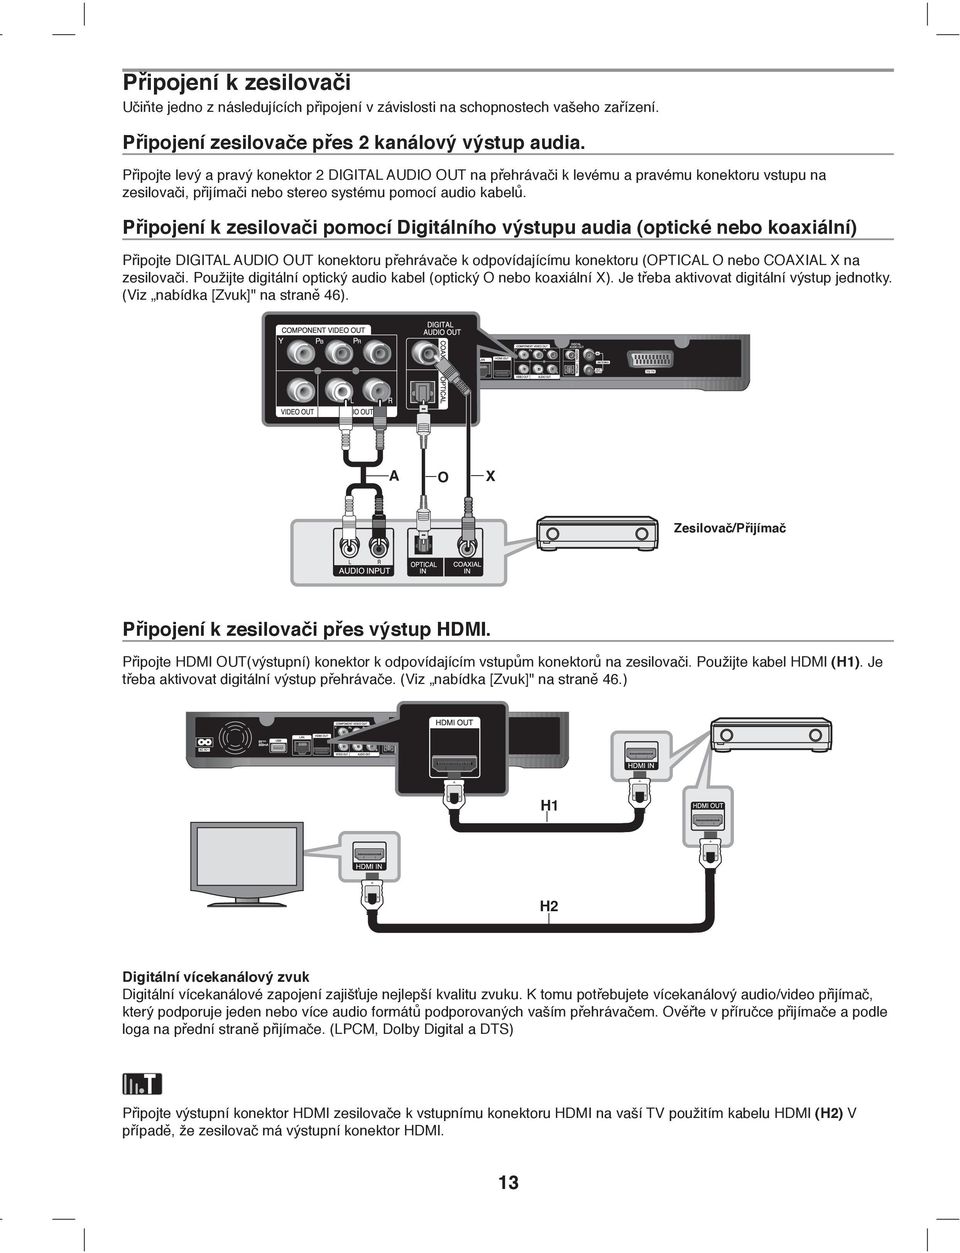 Připojení k zesilovači pomocí Digitálního výstupu audia (optické nebo koaxiální) Připojte DIGITAL AUDIO OUT konektoru přehrávače k odpovídajícímu konektoru (OPTICAL O nebo COAXIAL X na zesilovači.